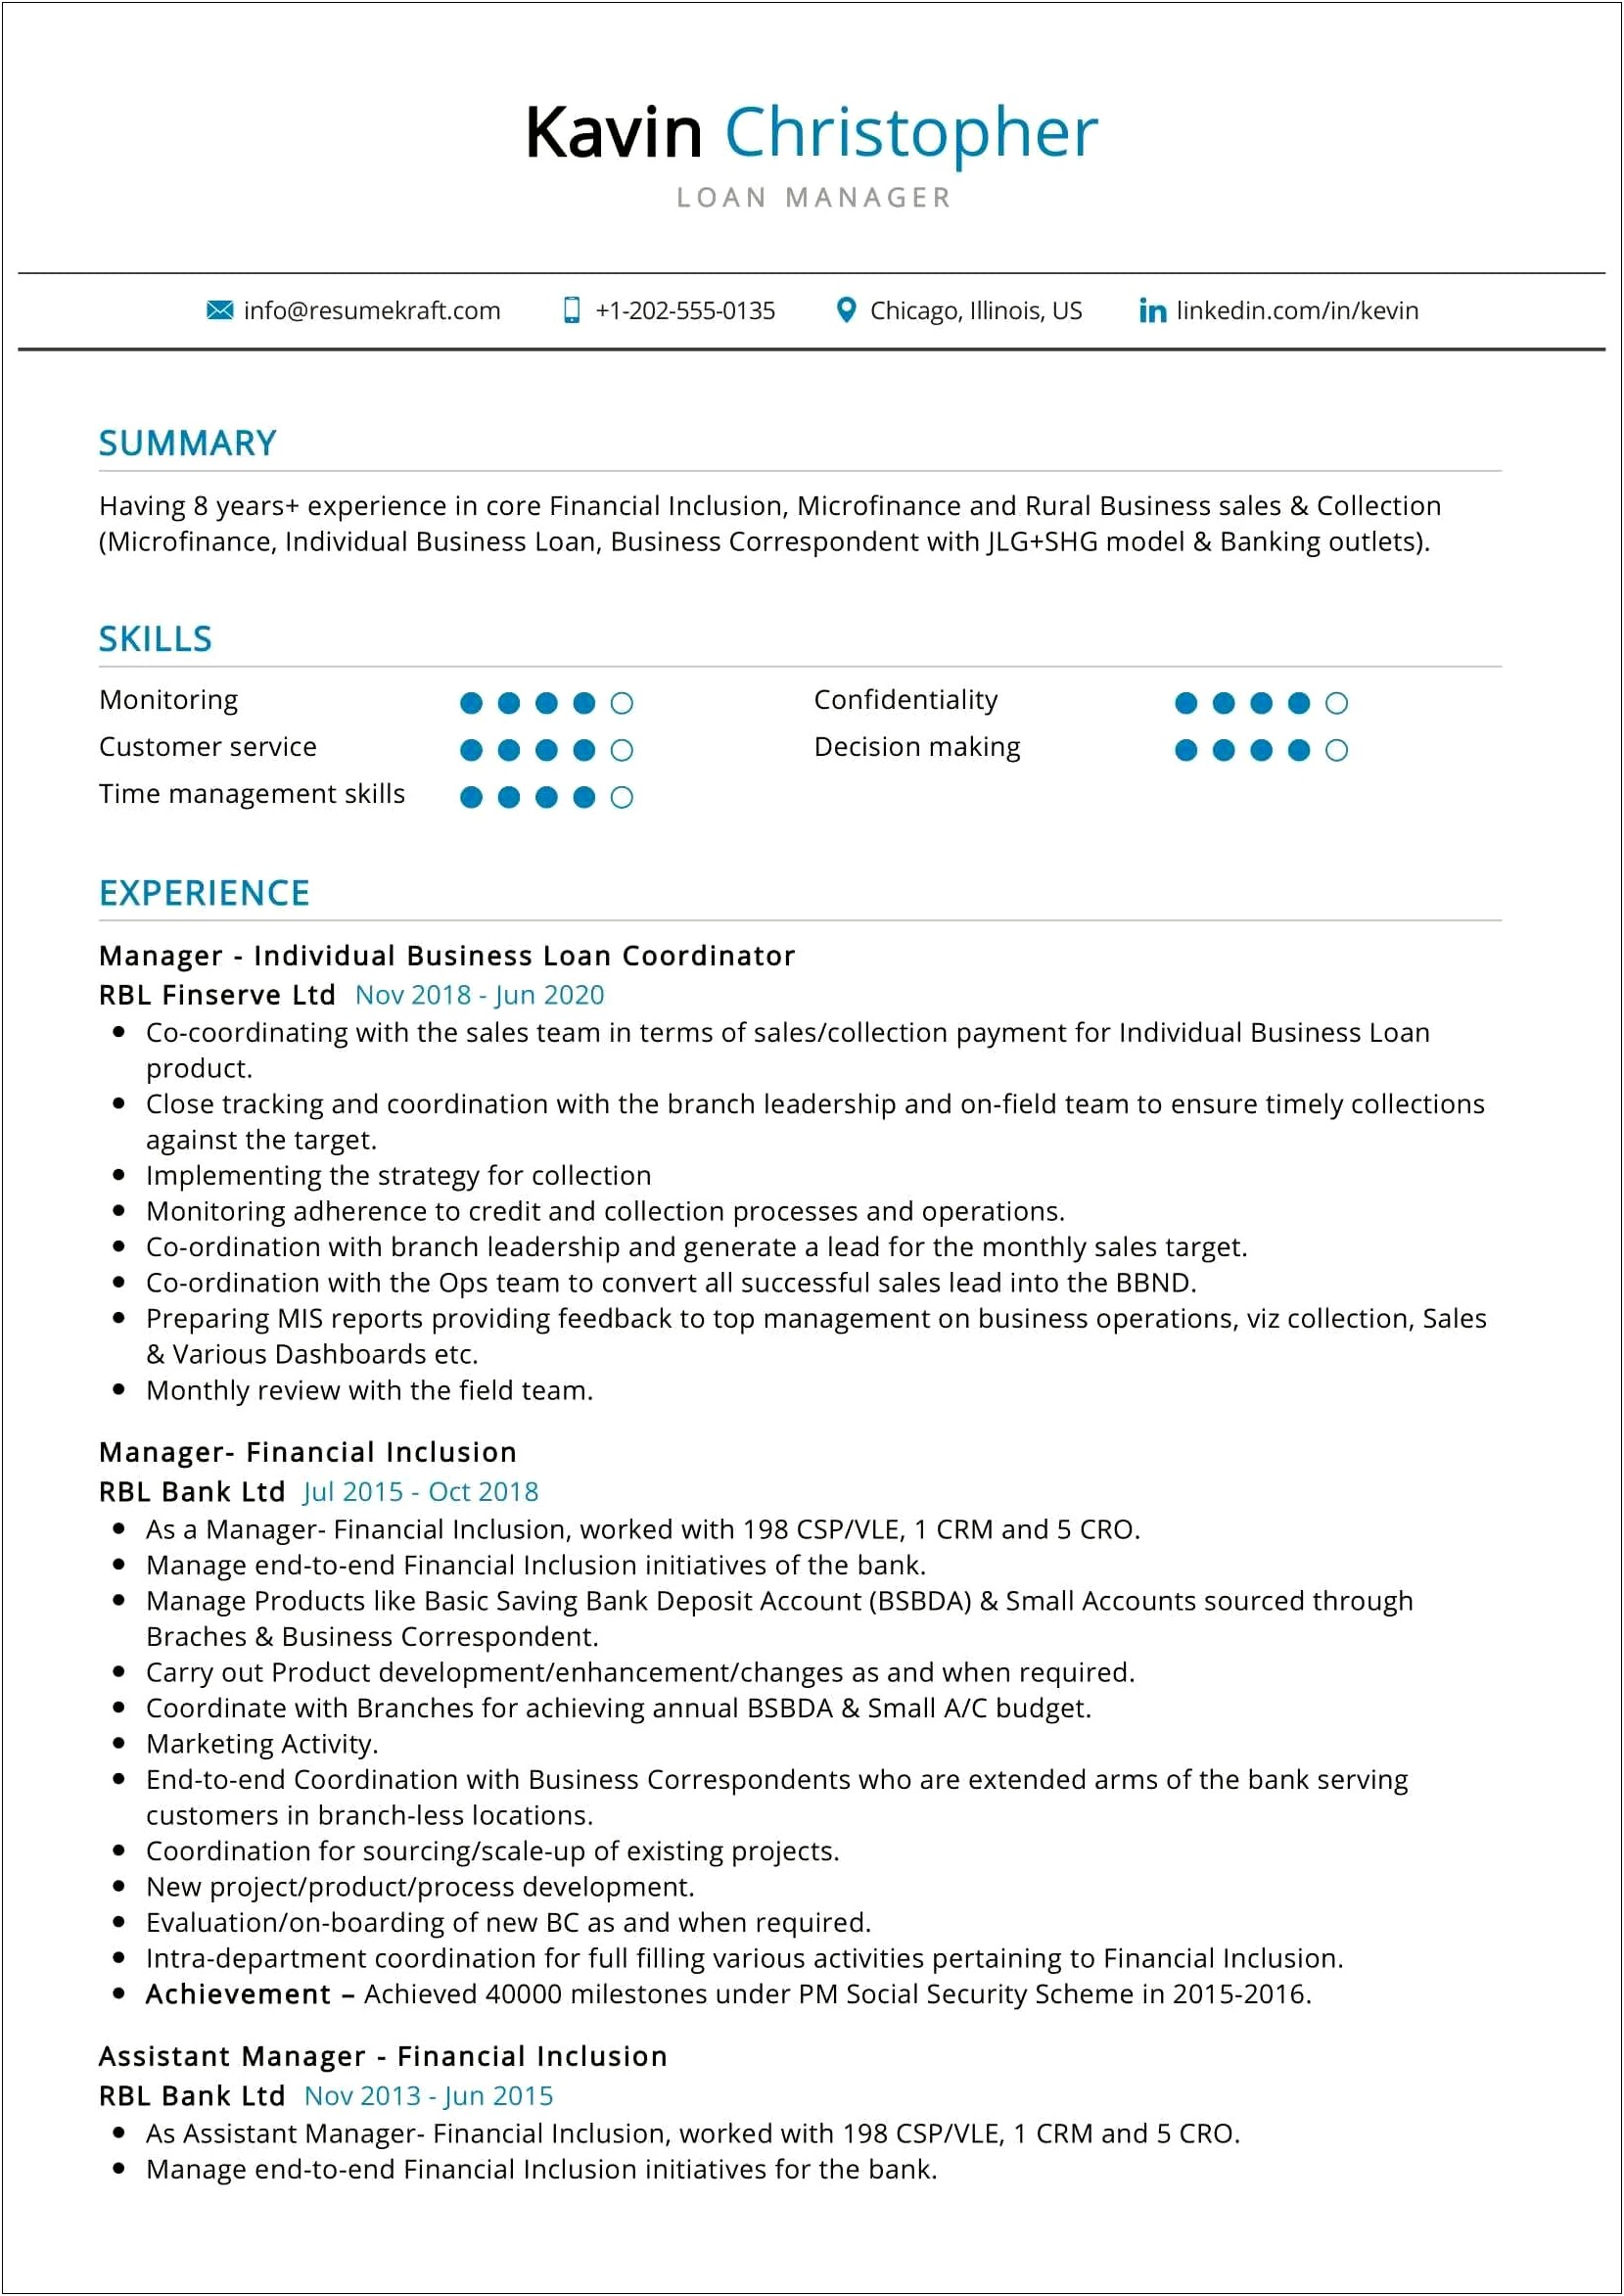 Mortgage Consultant Job Description Resume